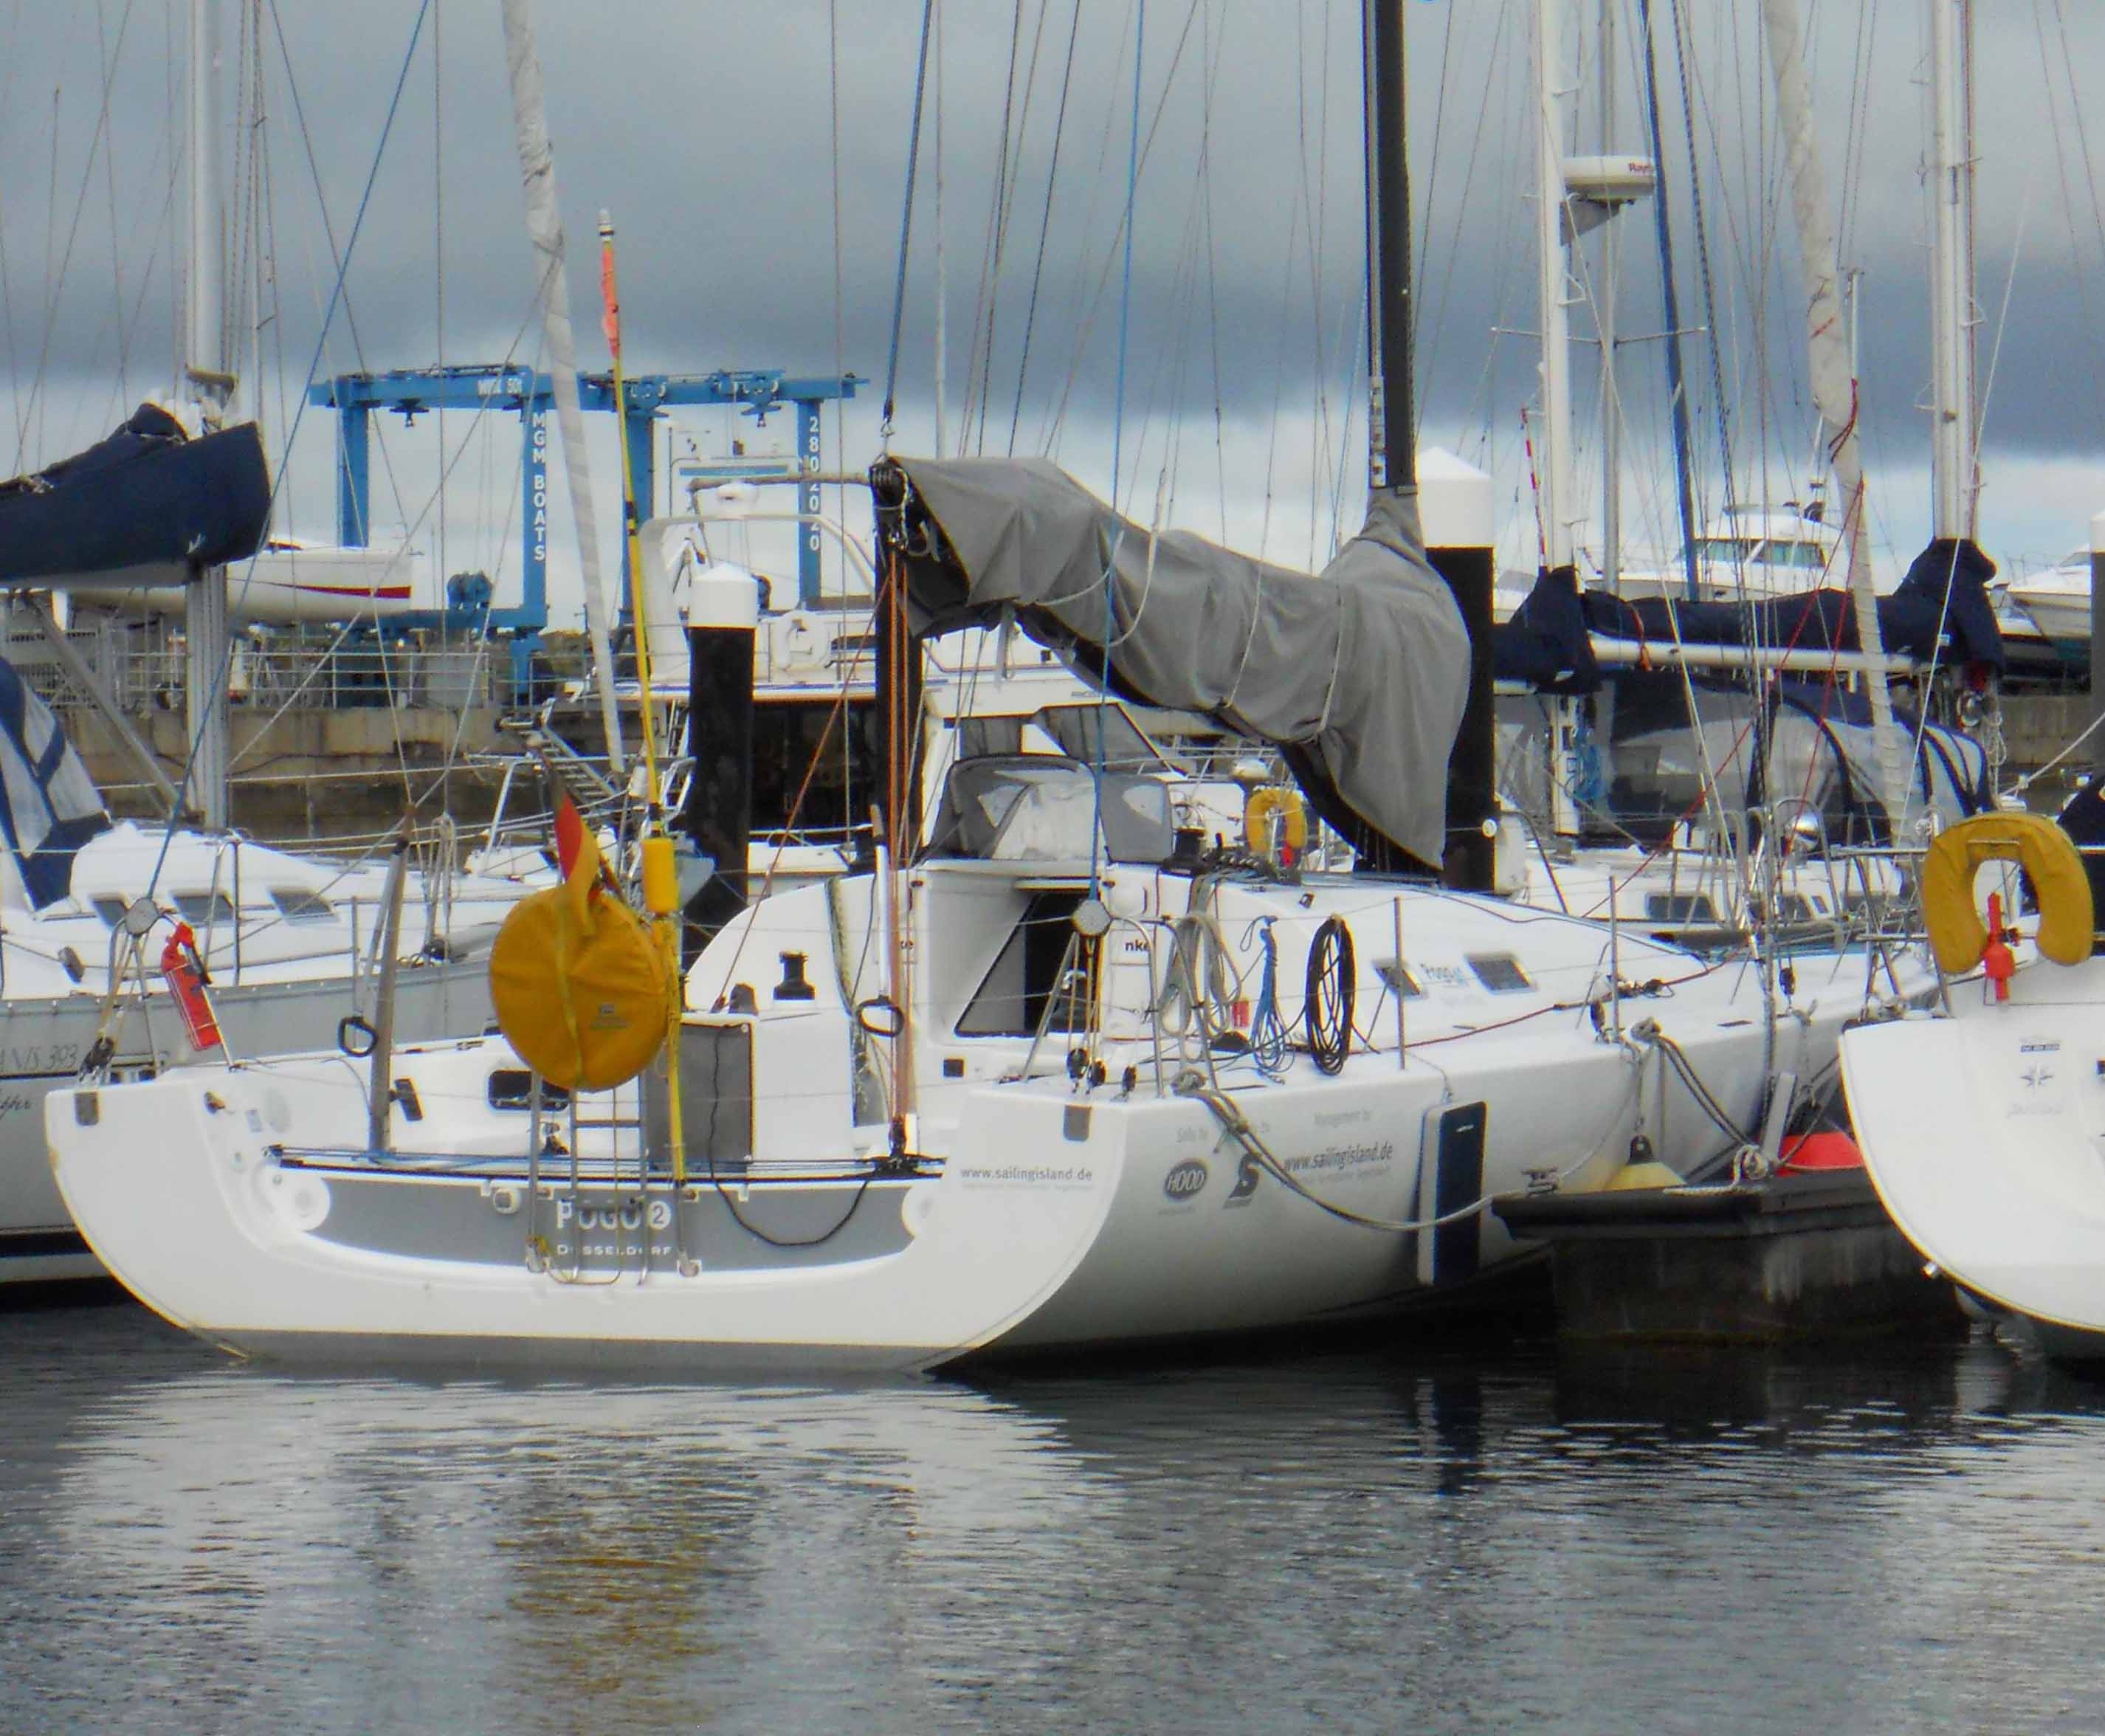 Die Pogo 40, ein Hochseeracer mit Skipper von Sailing Island, in der Dun Laoghaire Marina, Dublin